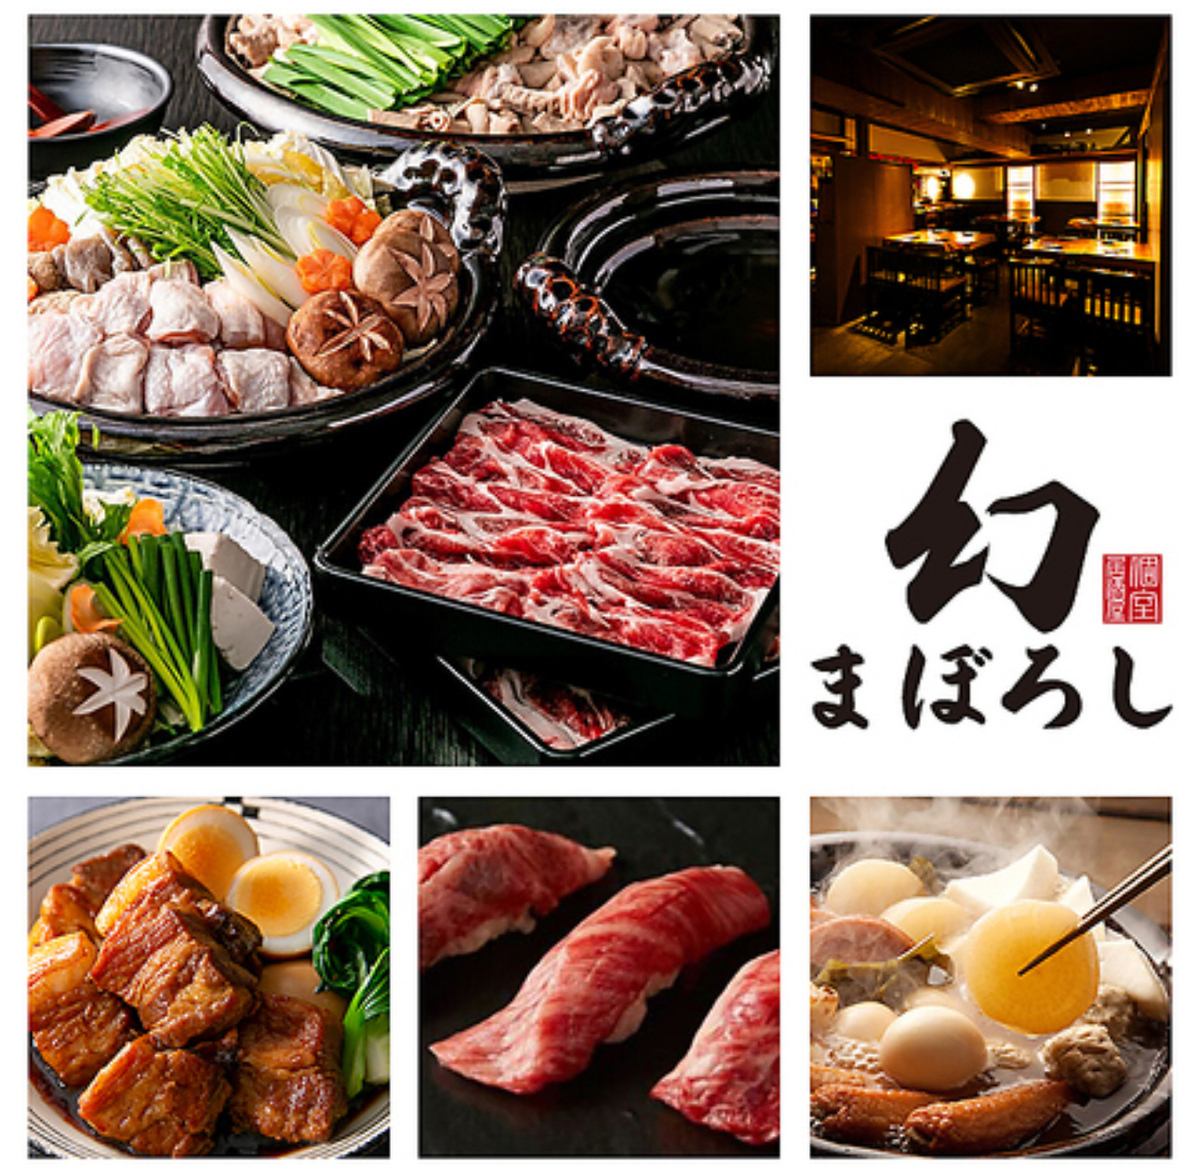 【전석 개인실】 통통 오뎅 500엔 뷔페! 고기 스시와 맛있는 고기가 자랑하는 개인실 선술집!